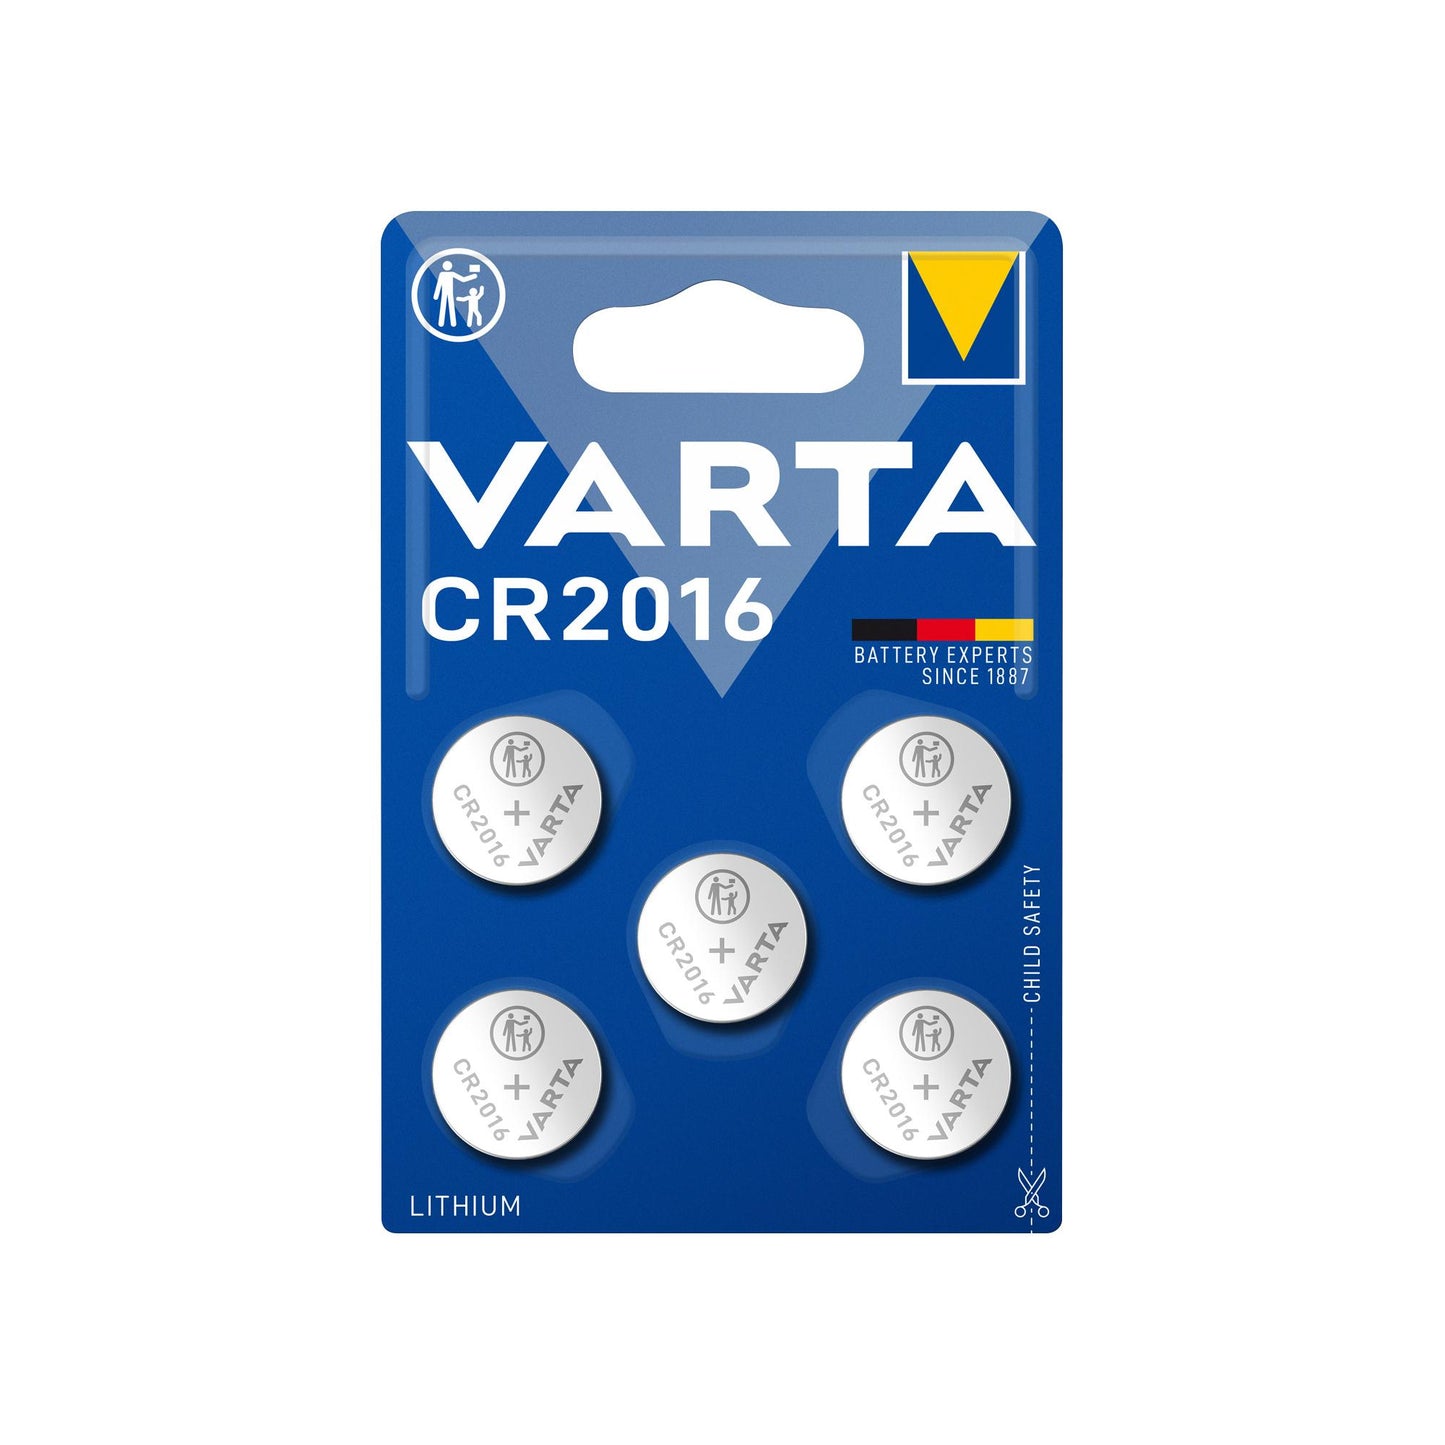 VARTA Batterie Lithium Knopfzelle CR2016, 3V, Retail Blister (5-Pack)